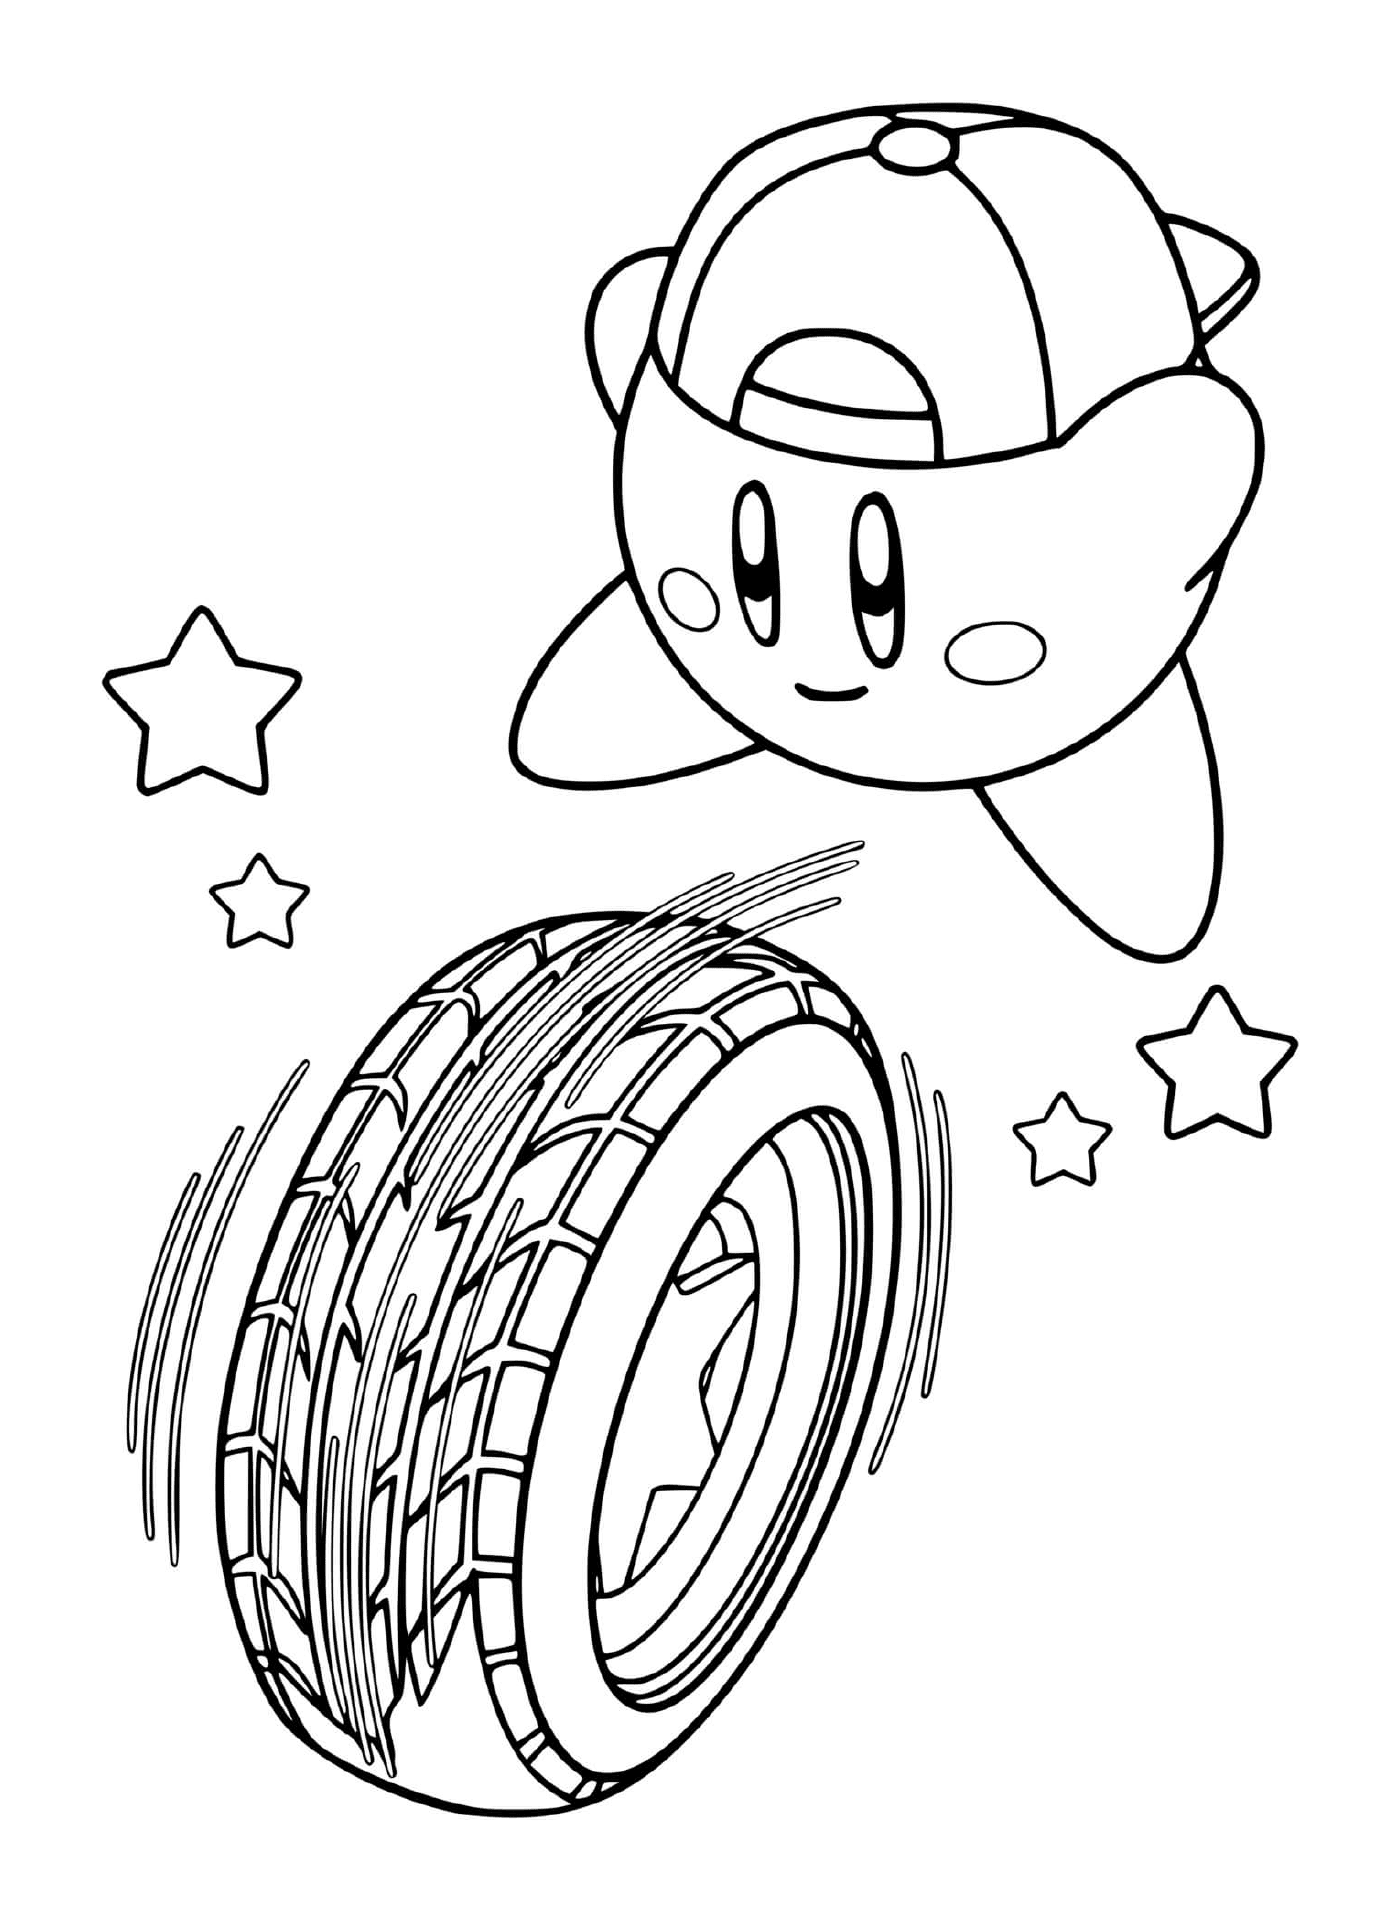  Enfriar Kirby lanzando una rueda rápida 